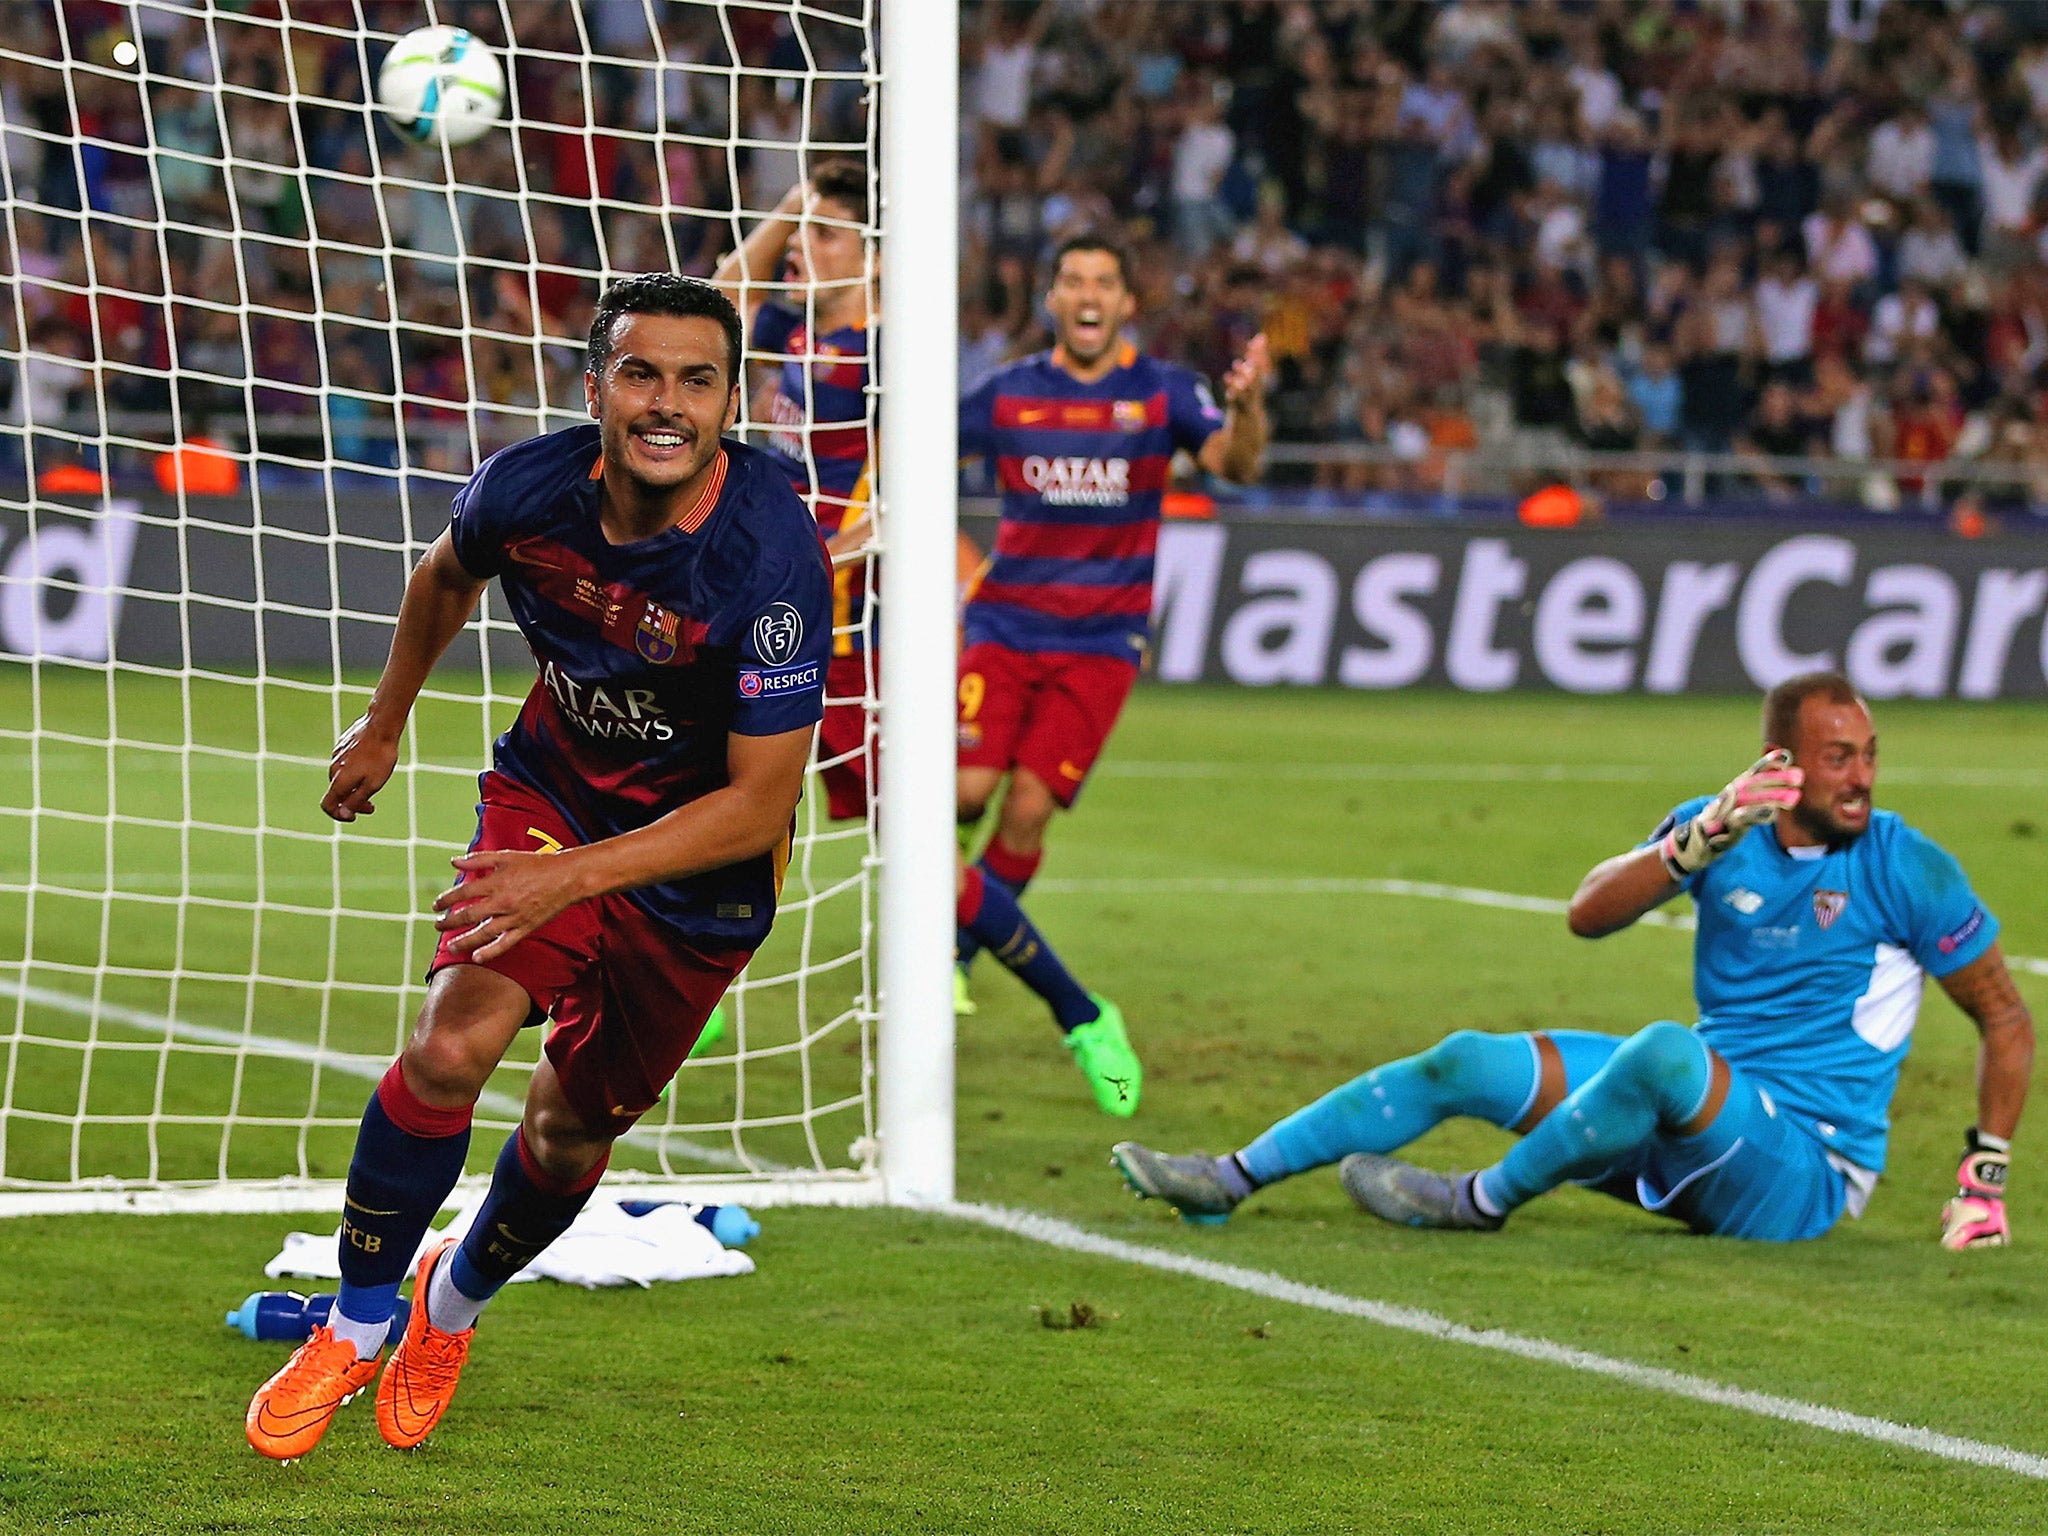 Barcelona vs Sevilla Super Cup match report Pedro hits winner in